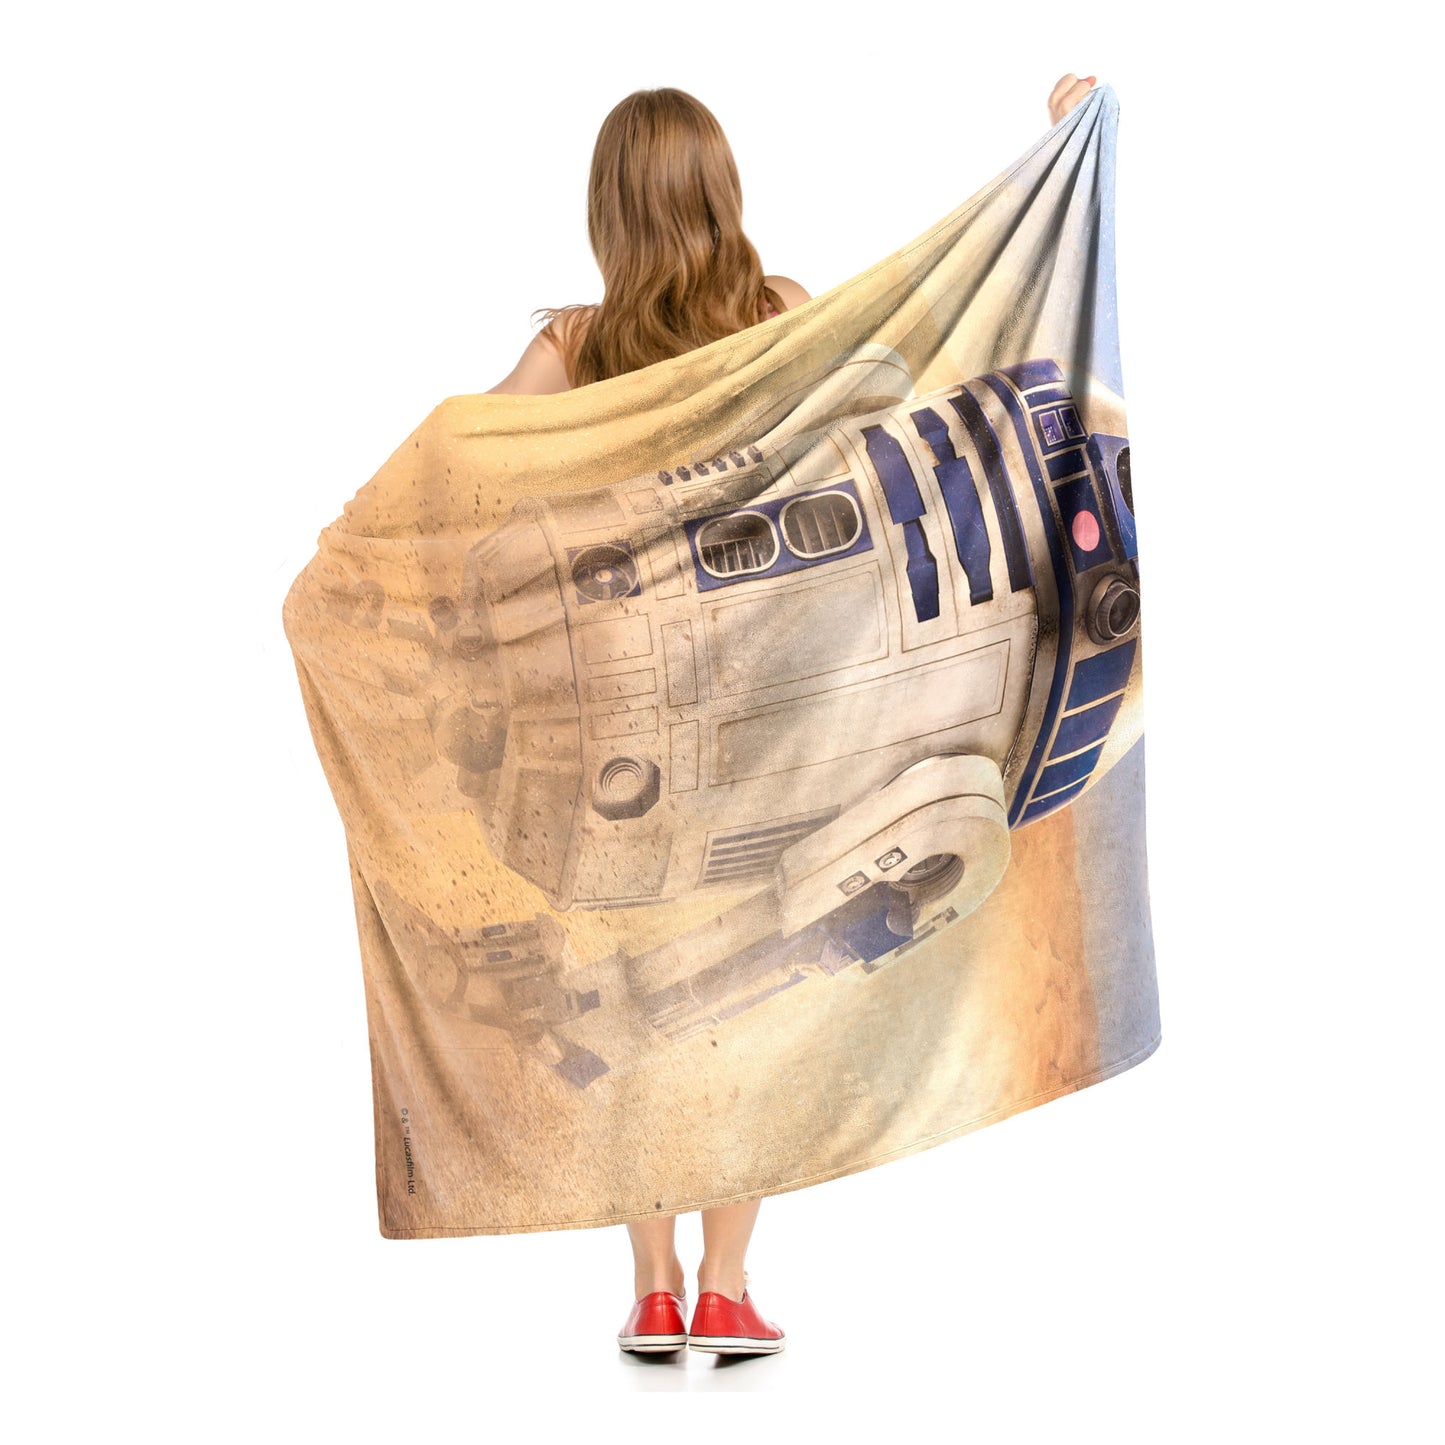 Star Wars Artoo Throw Blanket 50"x60"